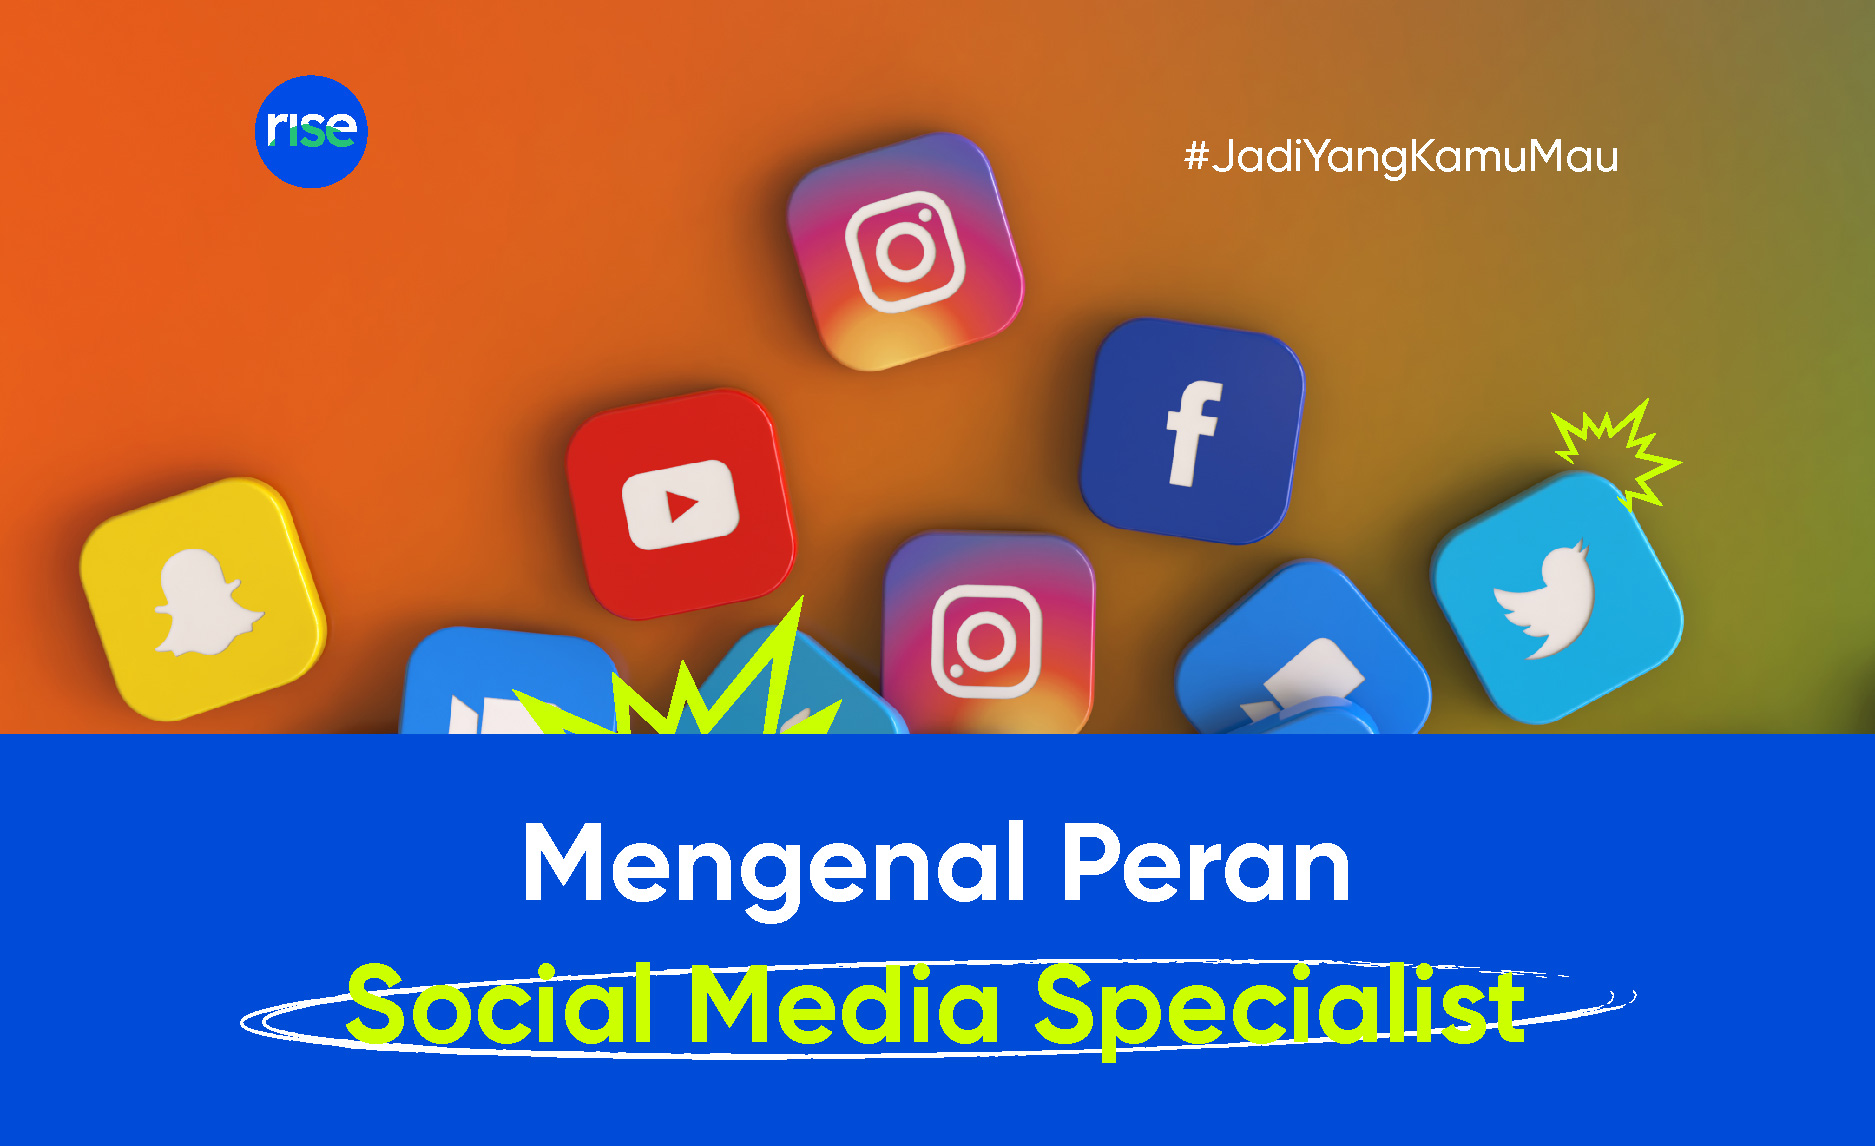 Social Media Specialist: Job Description, Pengertian, & Skill